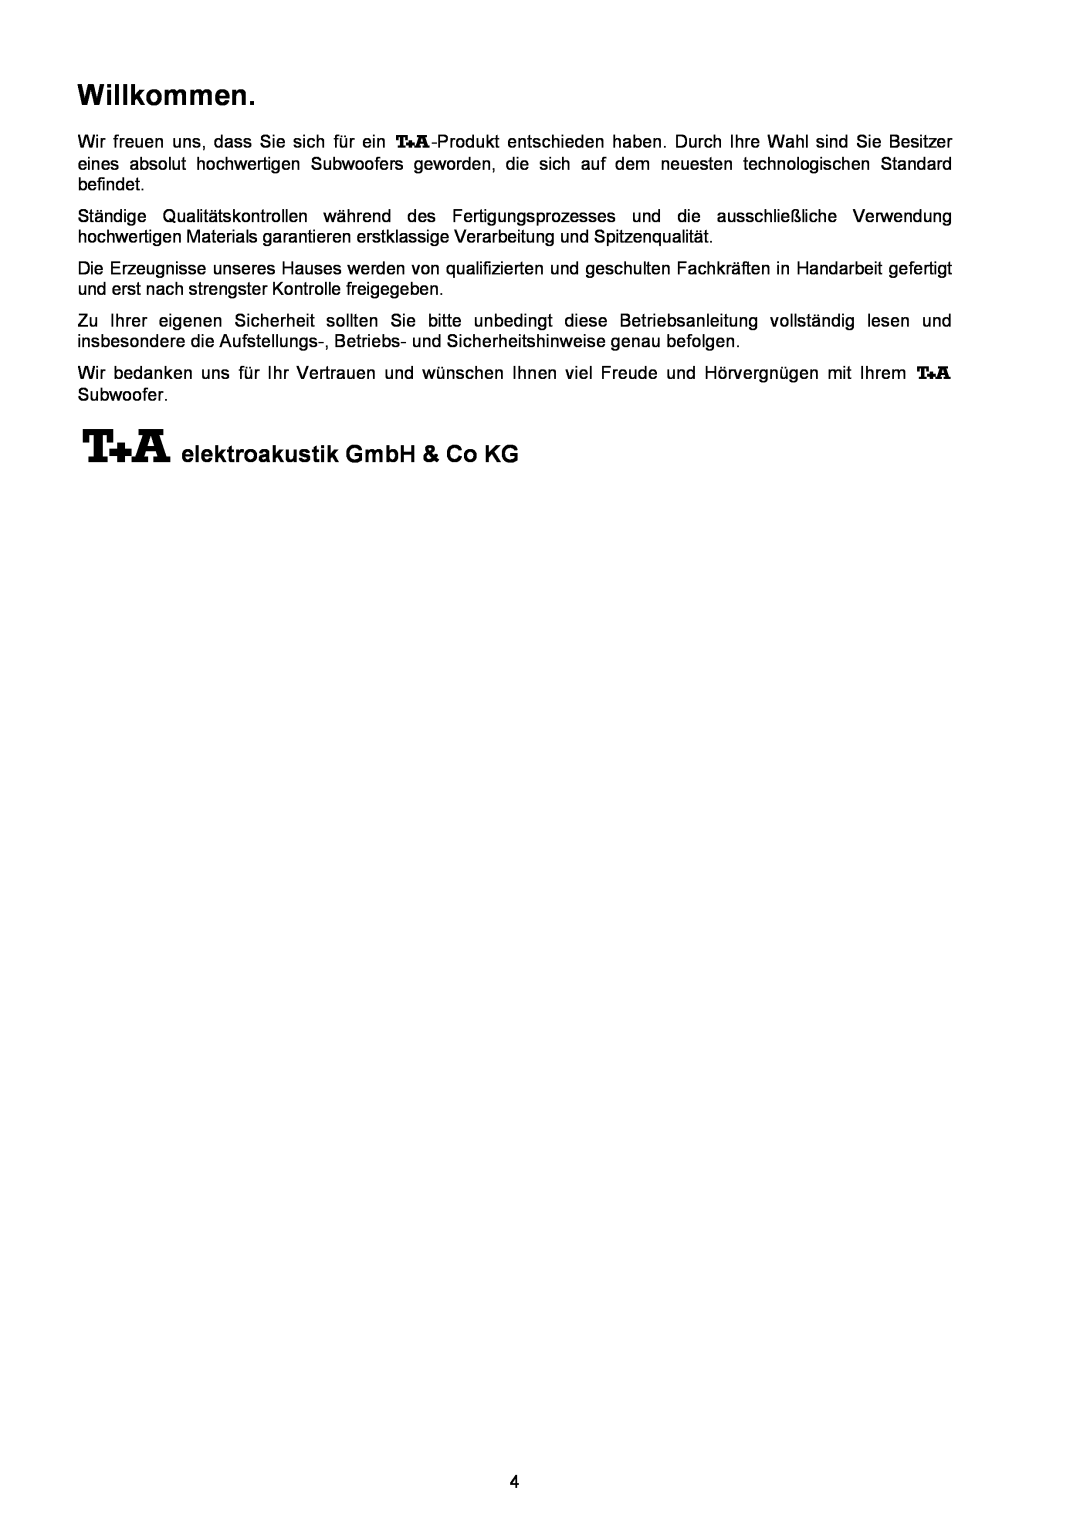 T+A Elektroakustik AE 14 user manual Willkommen, elektroakustik GmbH & Co KG 